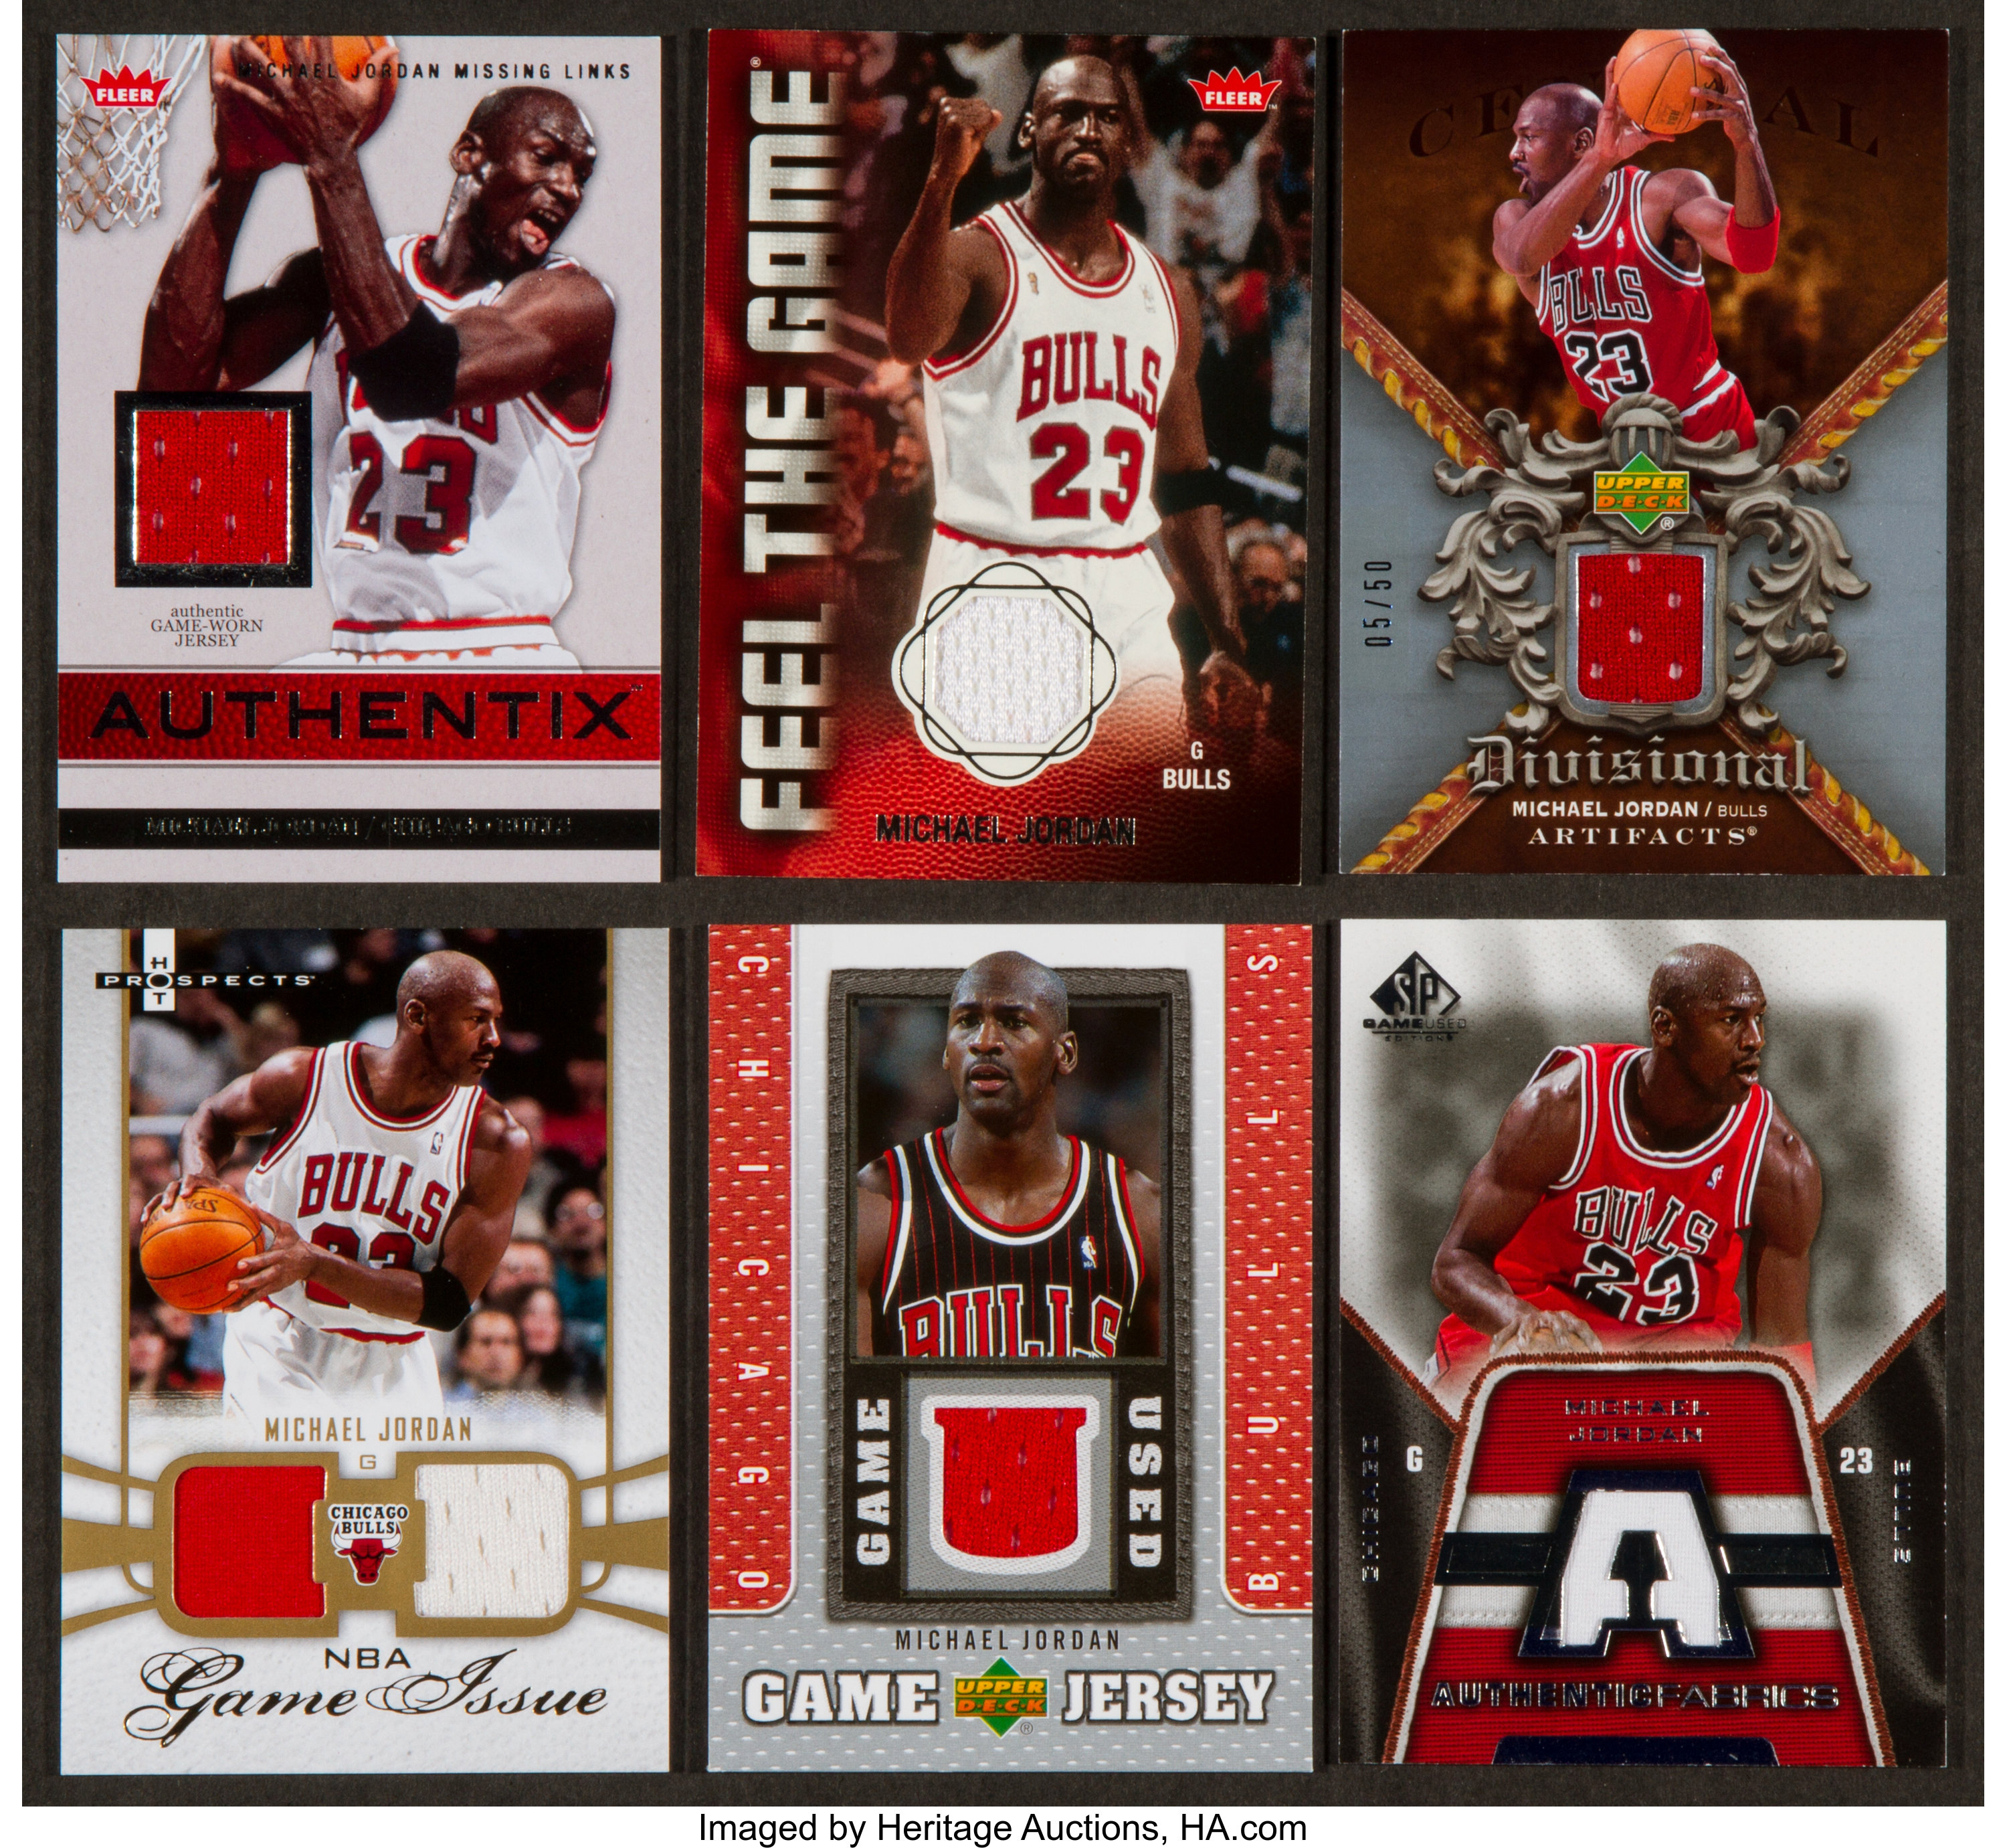 Game Used Jersey Michael Jordan Cards - Michael Jordan Cards